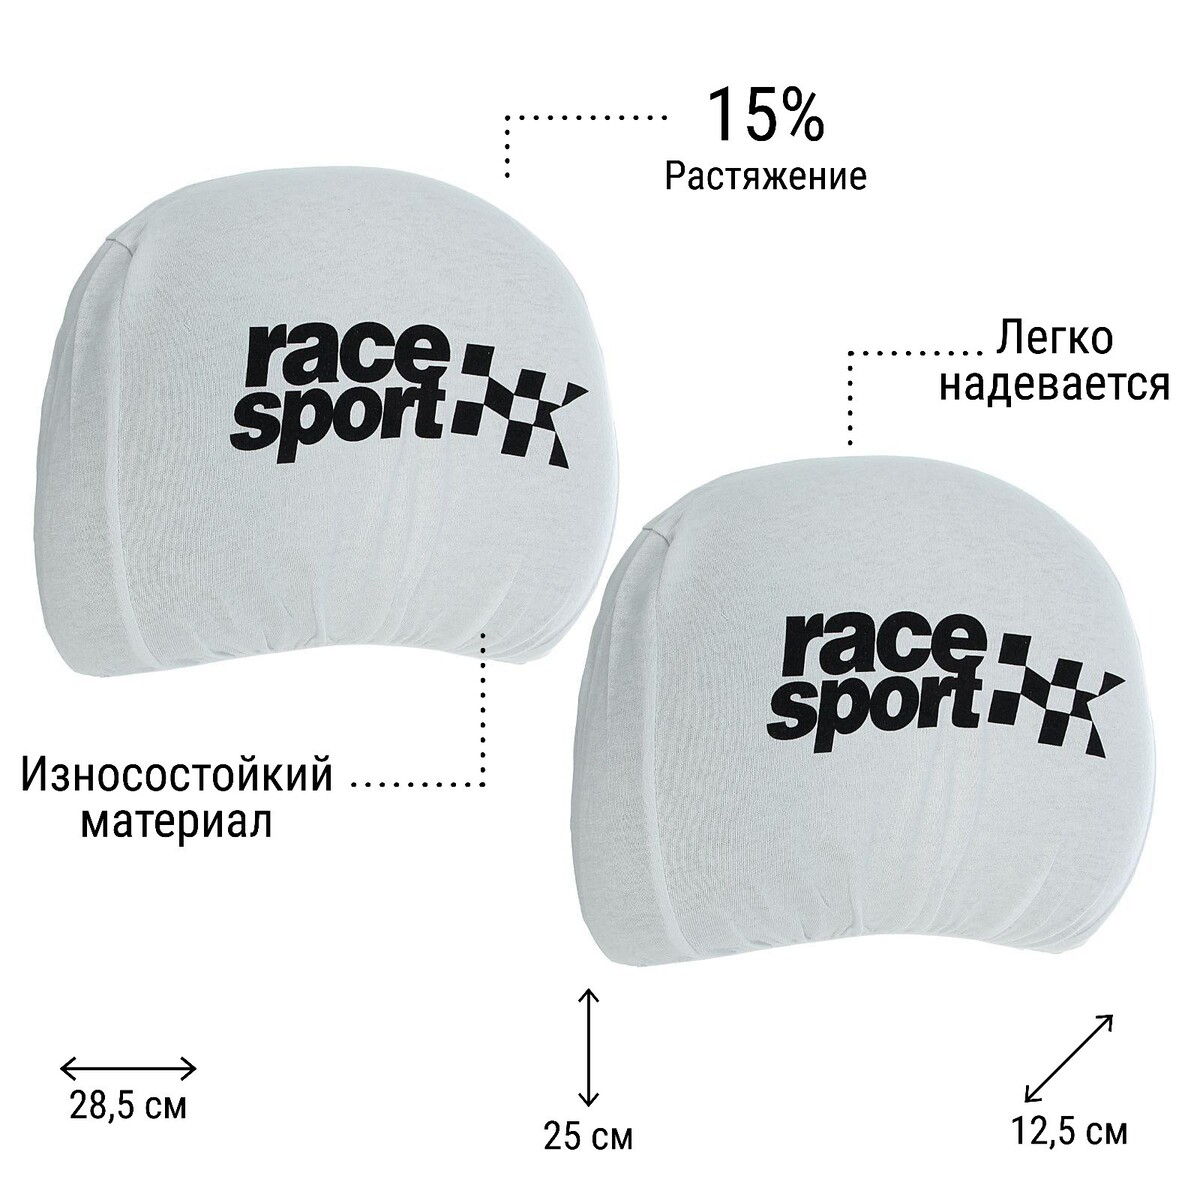 Чехлы на подголовник race sport, белые, набор 2 шт набор бантов белые с кружевами 2 шт 7 5 см